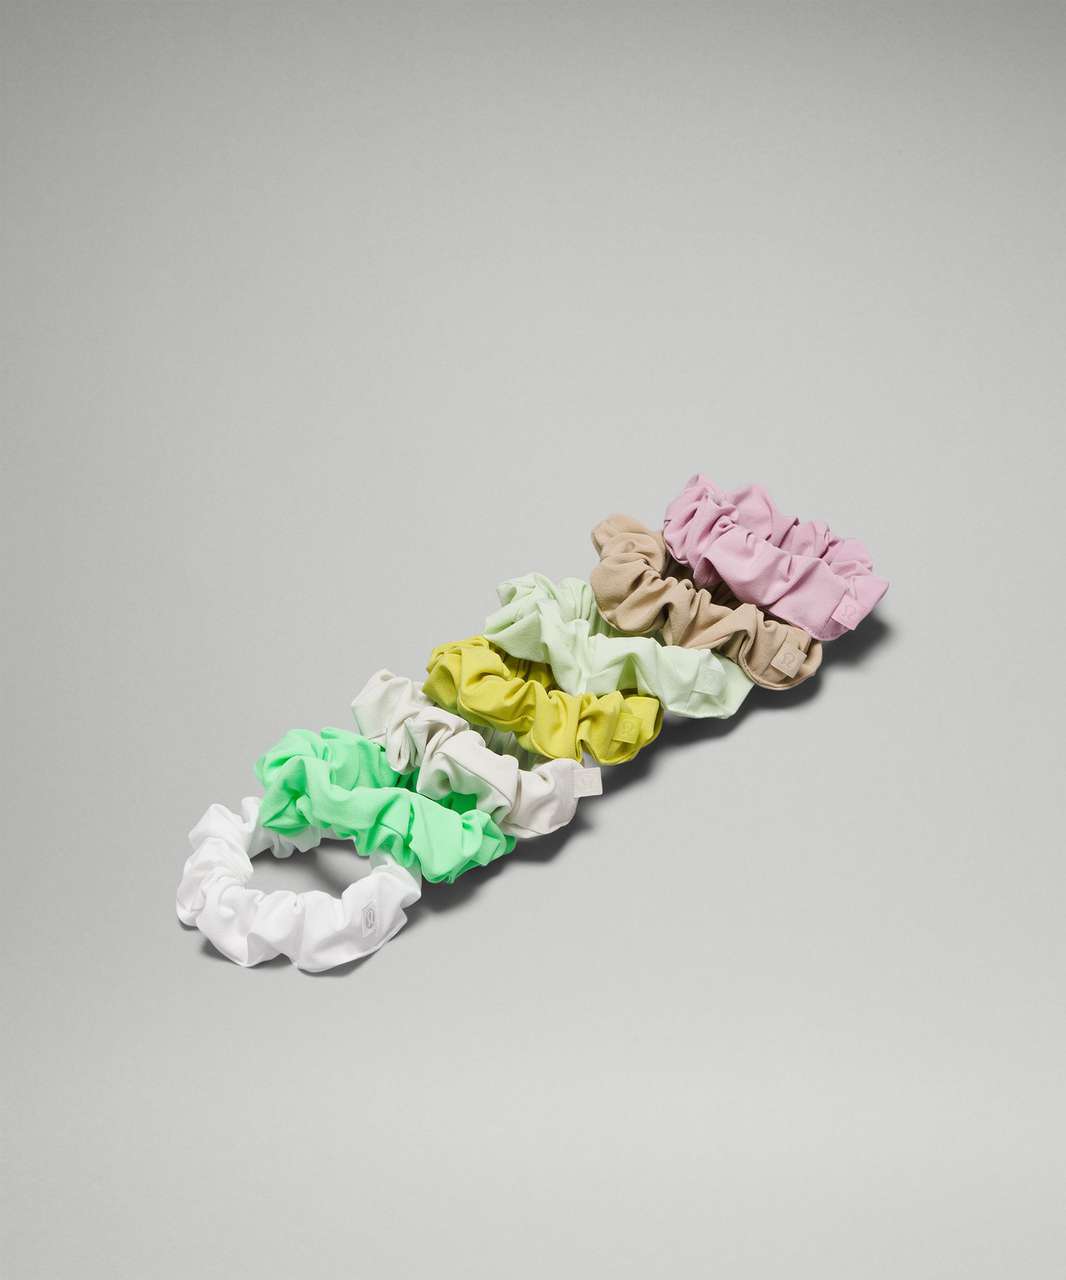 Lululemon Uplifting Scrunchies *7 Pack - Pistachio / Kohlrabi Green / Pink Peony / Bone / White / Yellow Serpentine / Trench